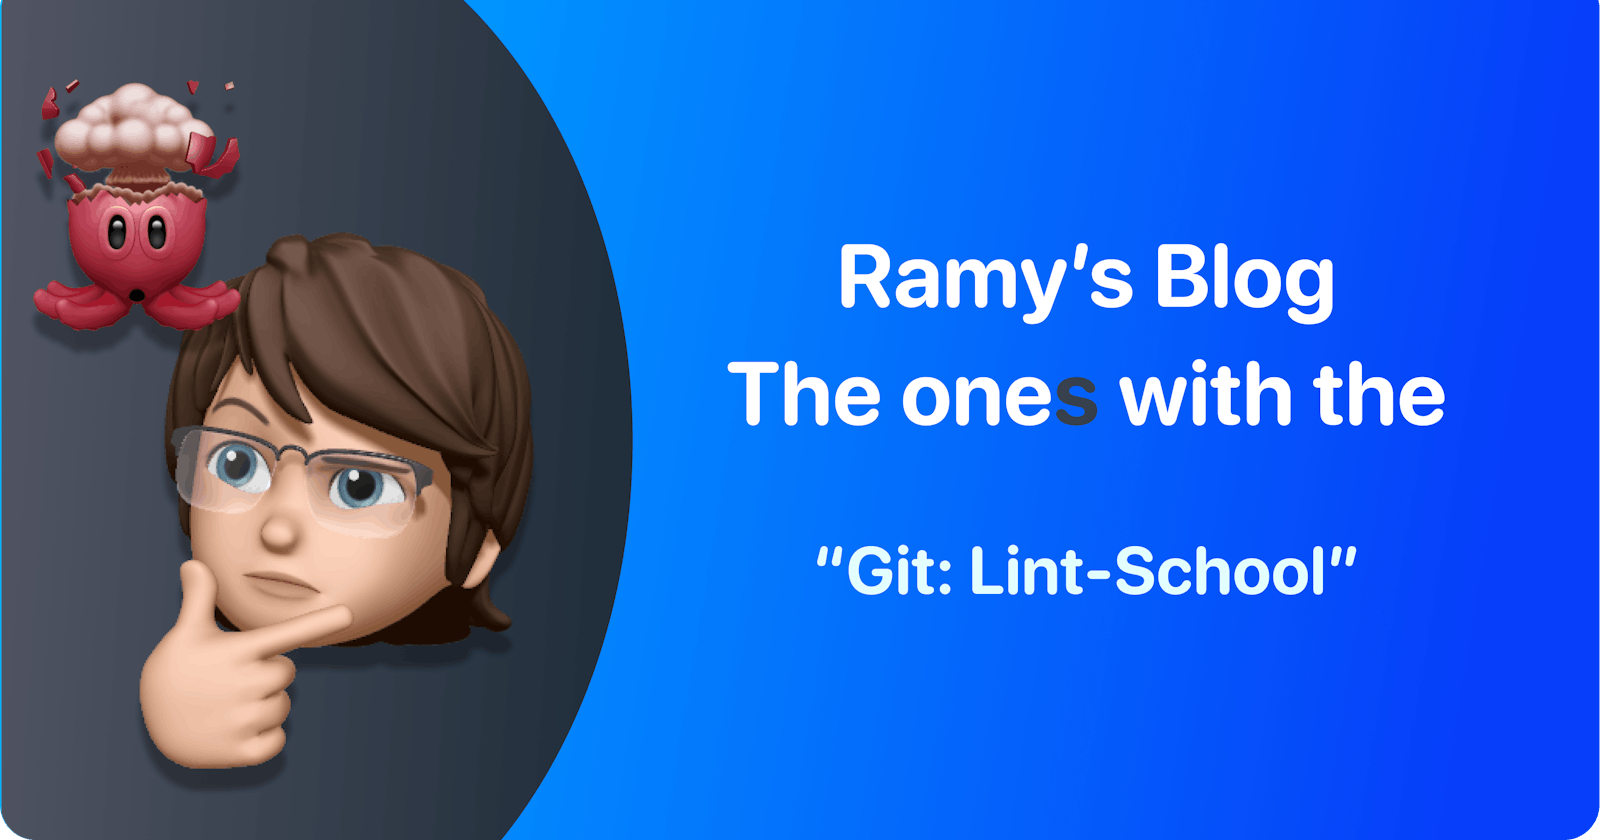 Git: Lint-School